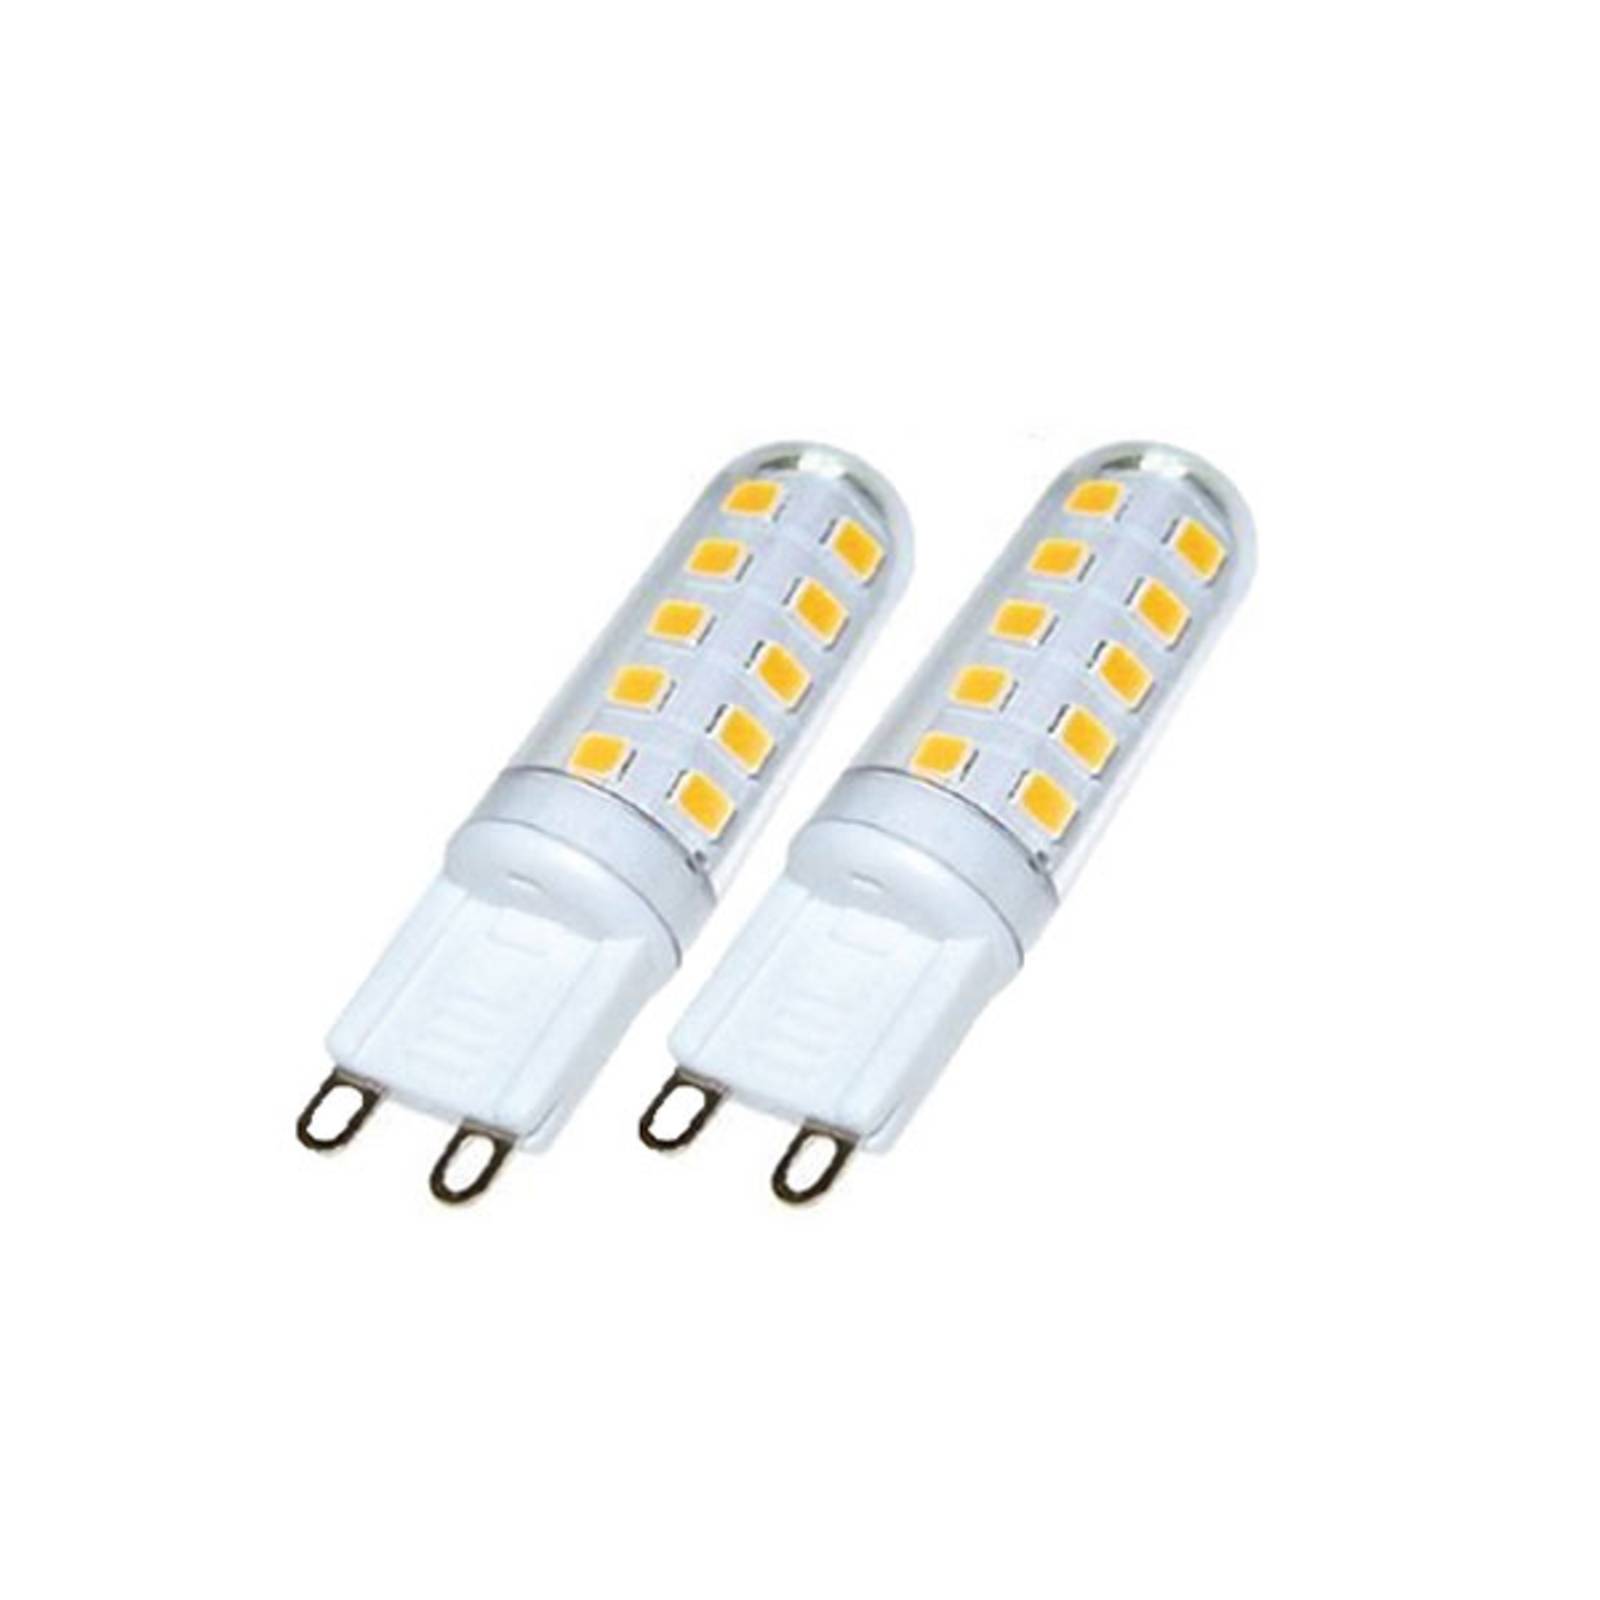 Trio Lighting Ampoule à broches LED G9 3W, 3.000 K, gradation externe, lot de 2